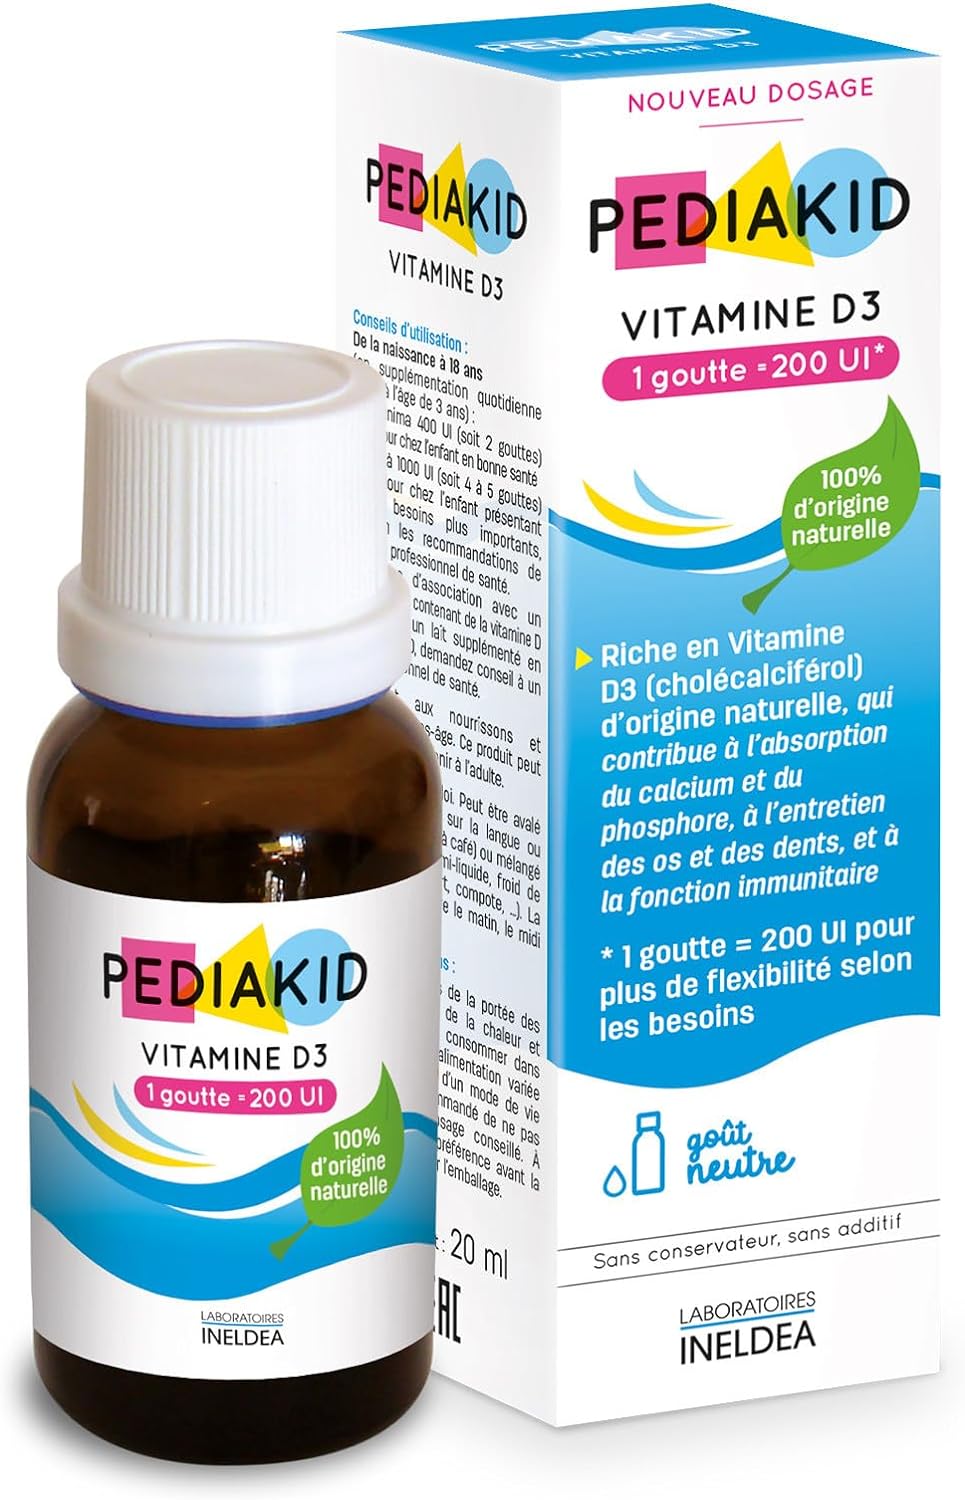 Pediakid vitamine D3 nourissons et enfants